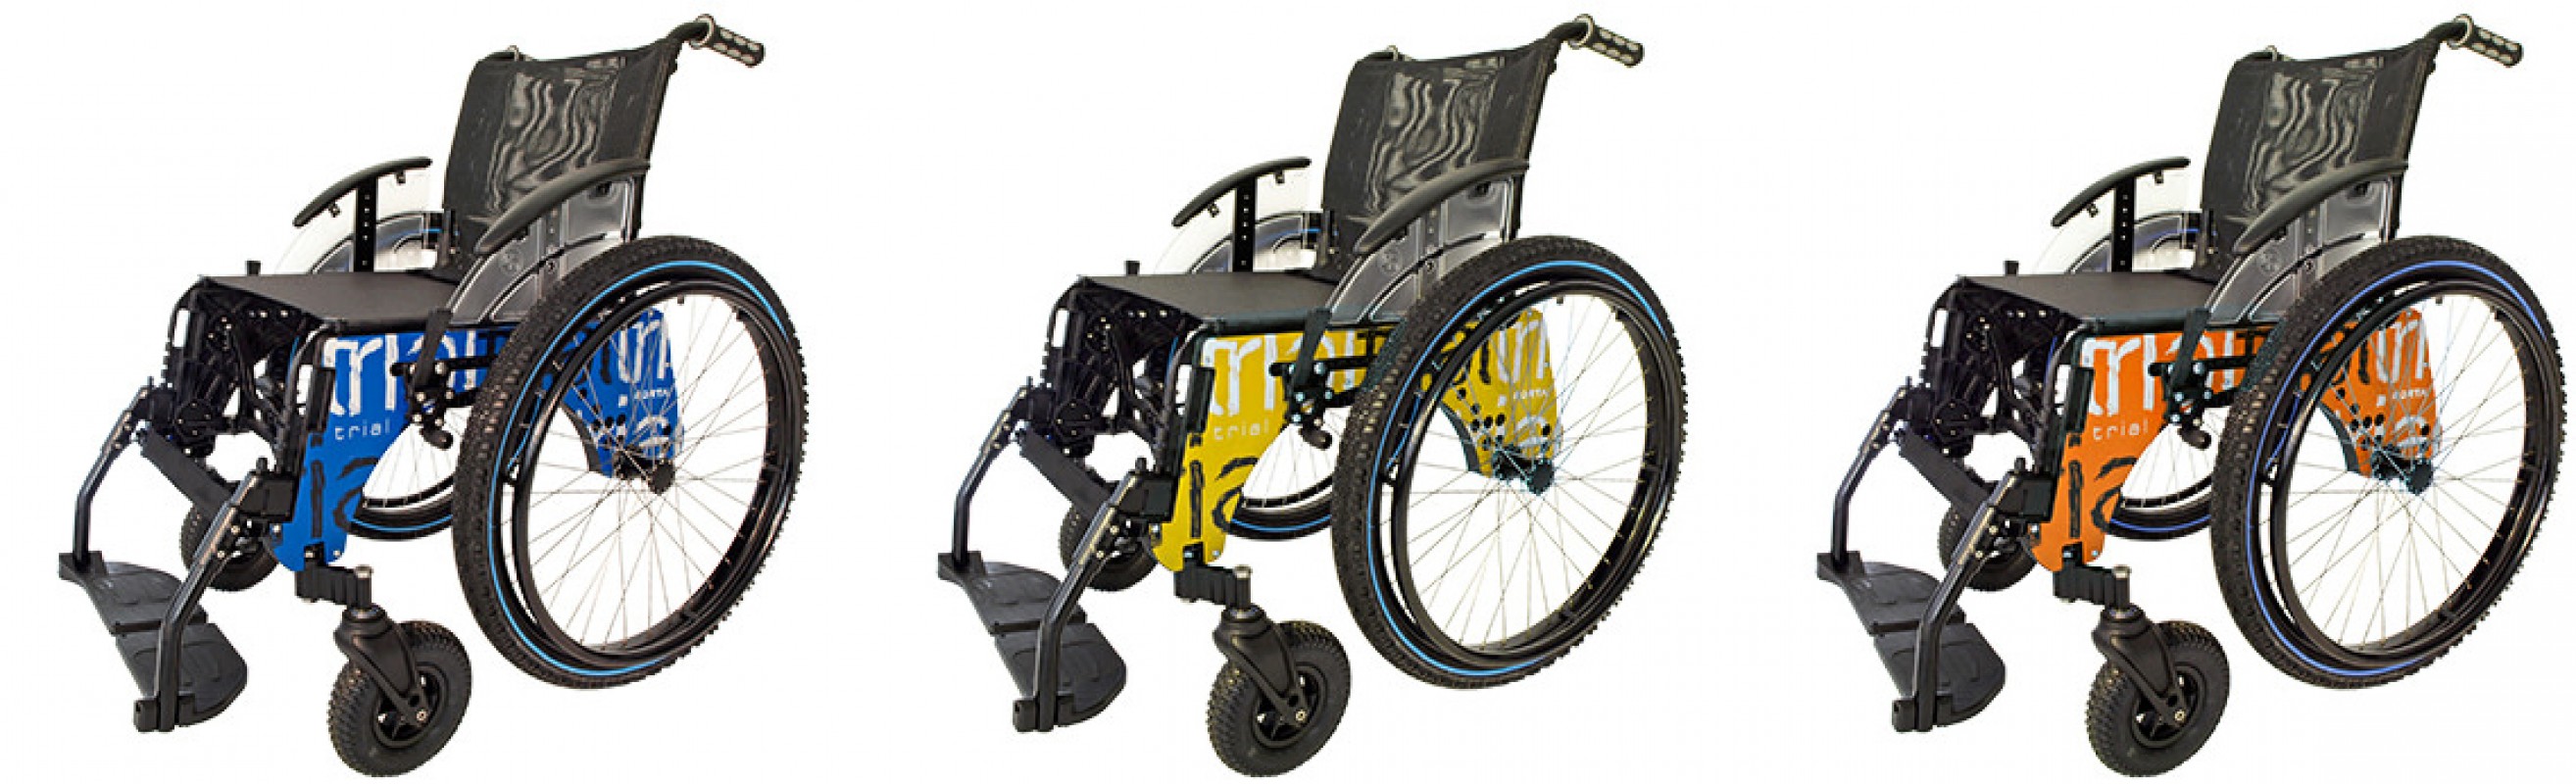 Forta Trial Playa silla de ruedas sumergible